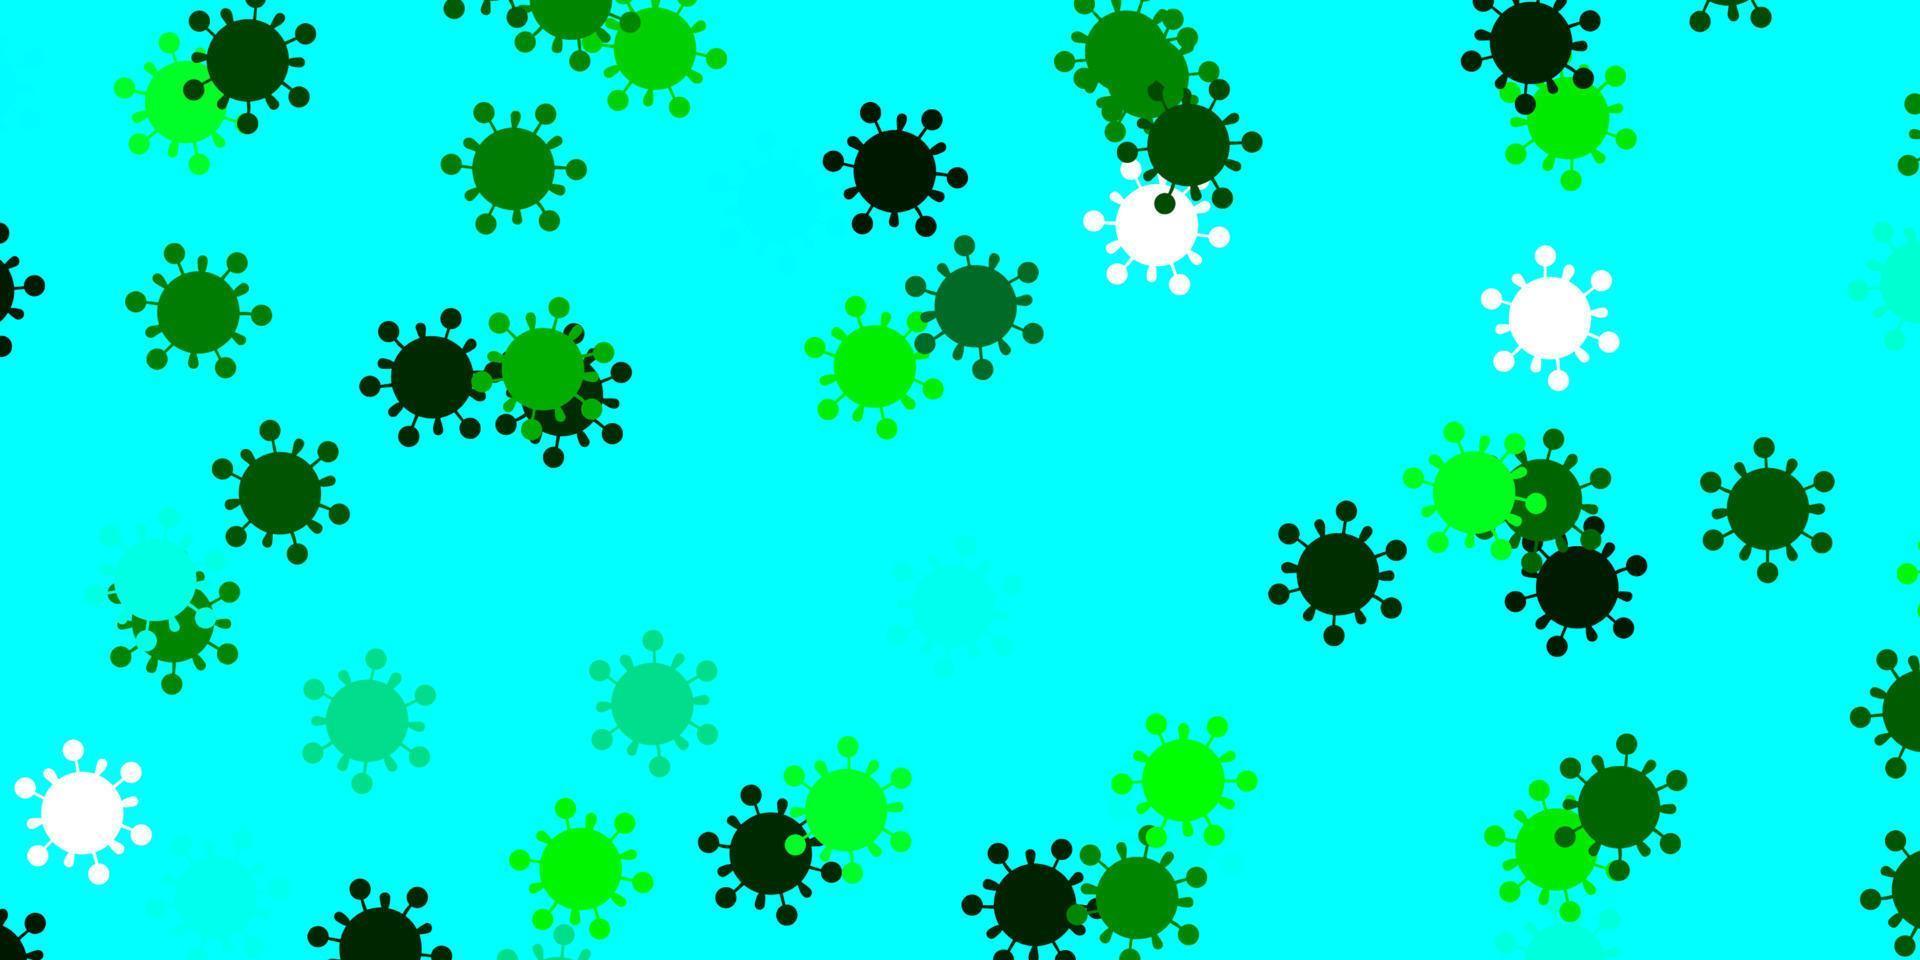 modèle vectoriel bleu clair et vert avec des signes de grippe.